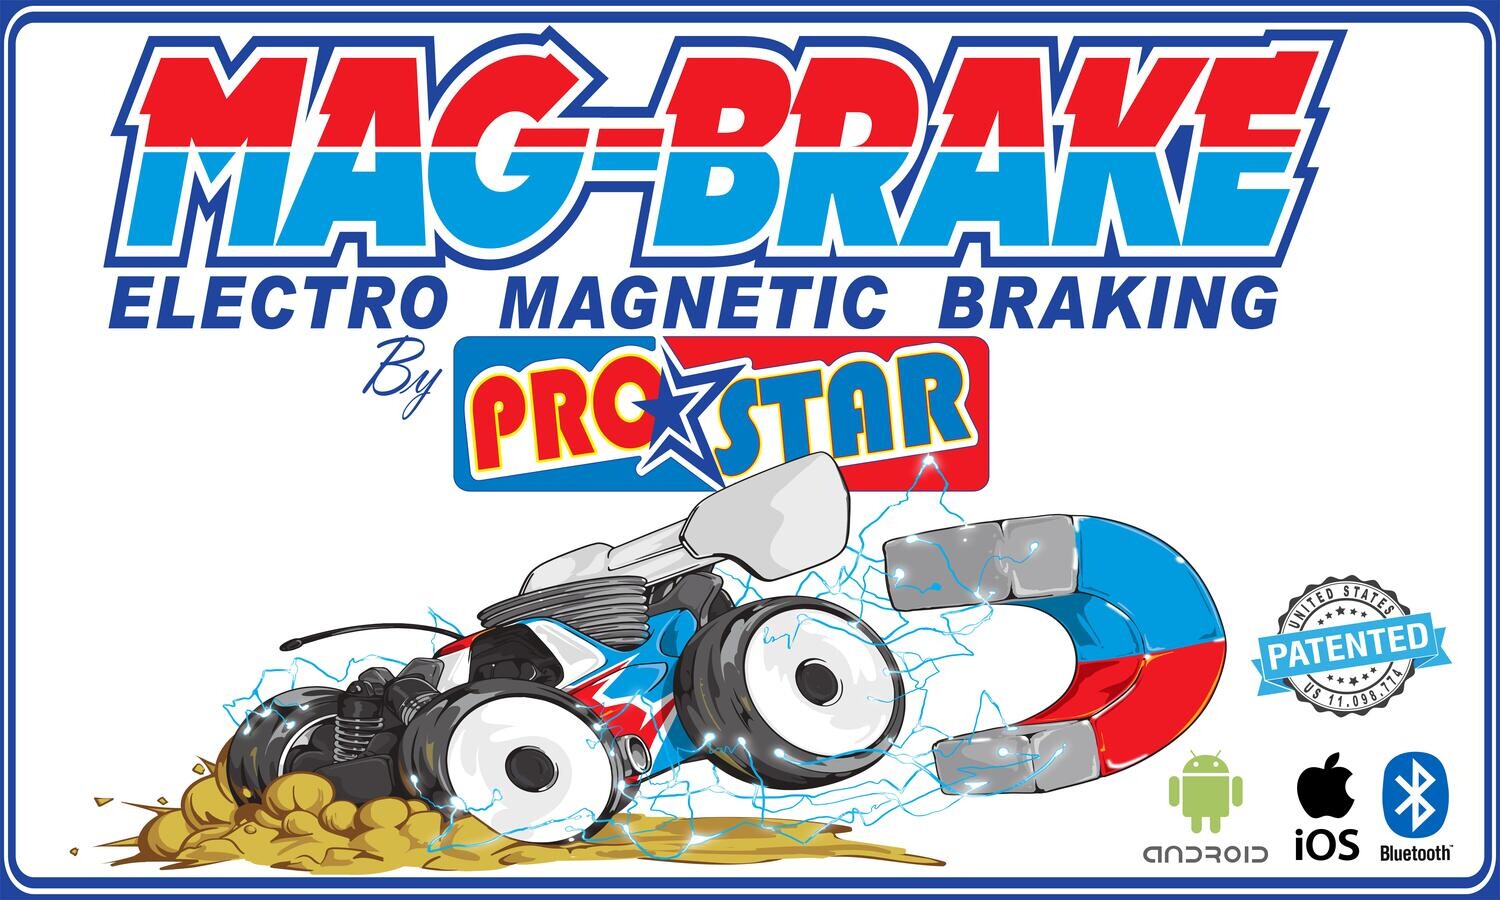 MAG-BRAKE (Electro-Magnetic Braking) Universal Kit by ProStar RC